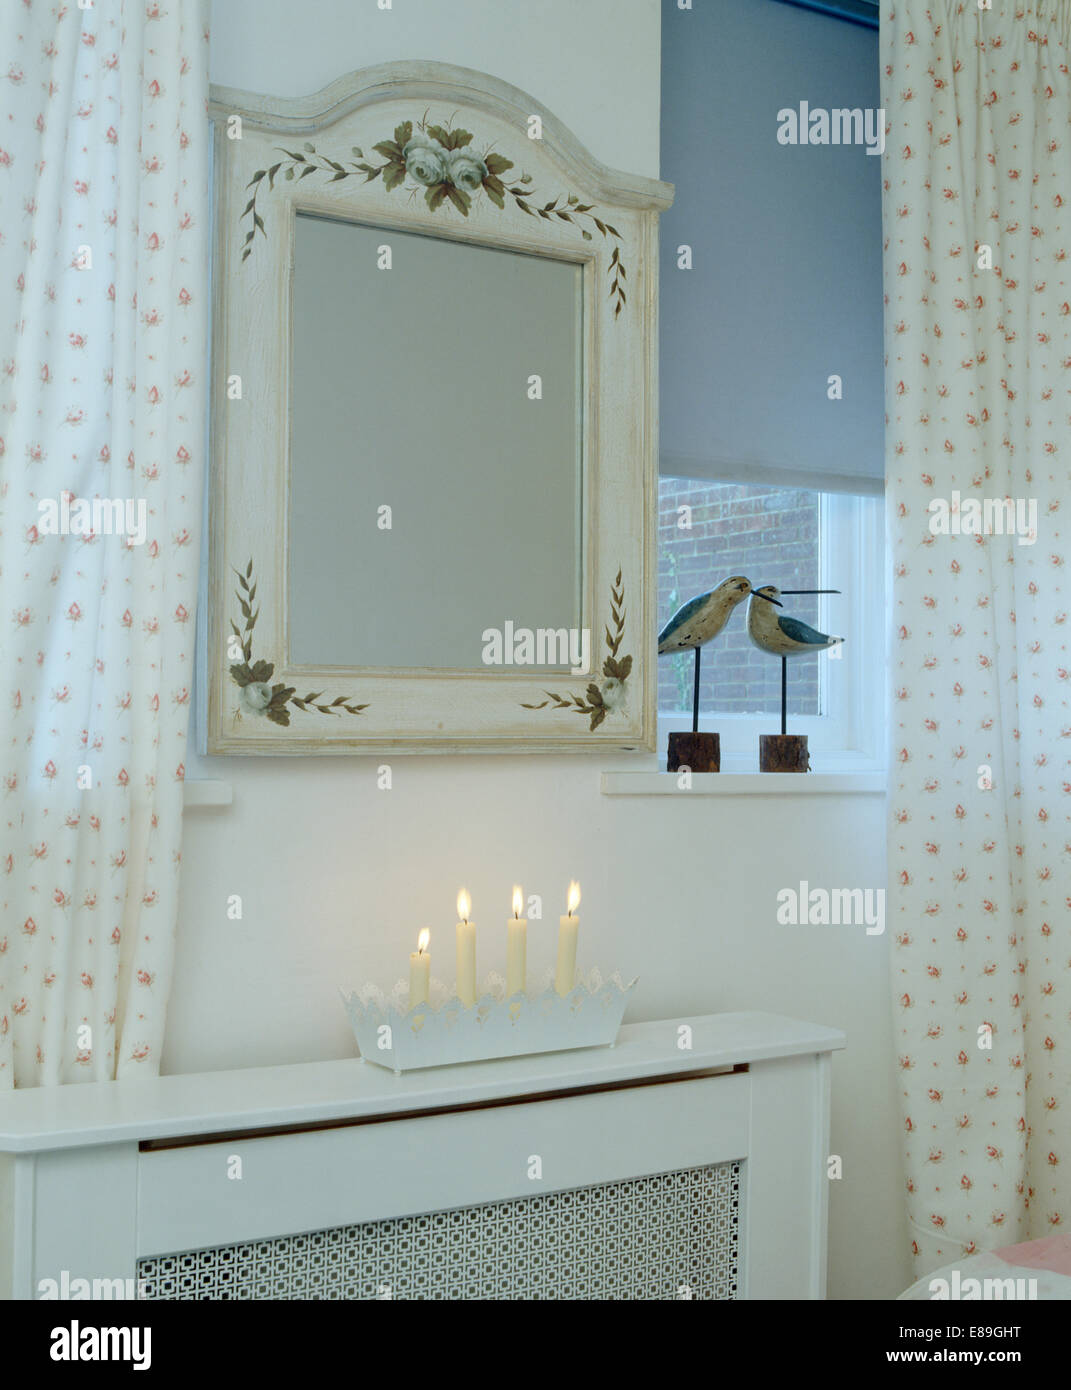 Tenda blu e tende a motivi geometrici accanto al dipinto a mano specchio sopra il coperchio del radiatore con le candele accese Foto Stock